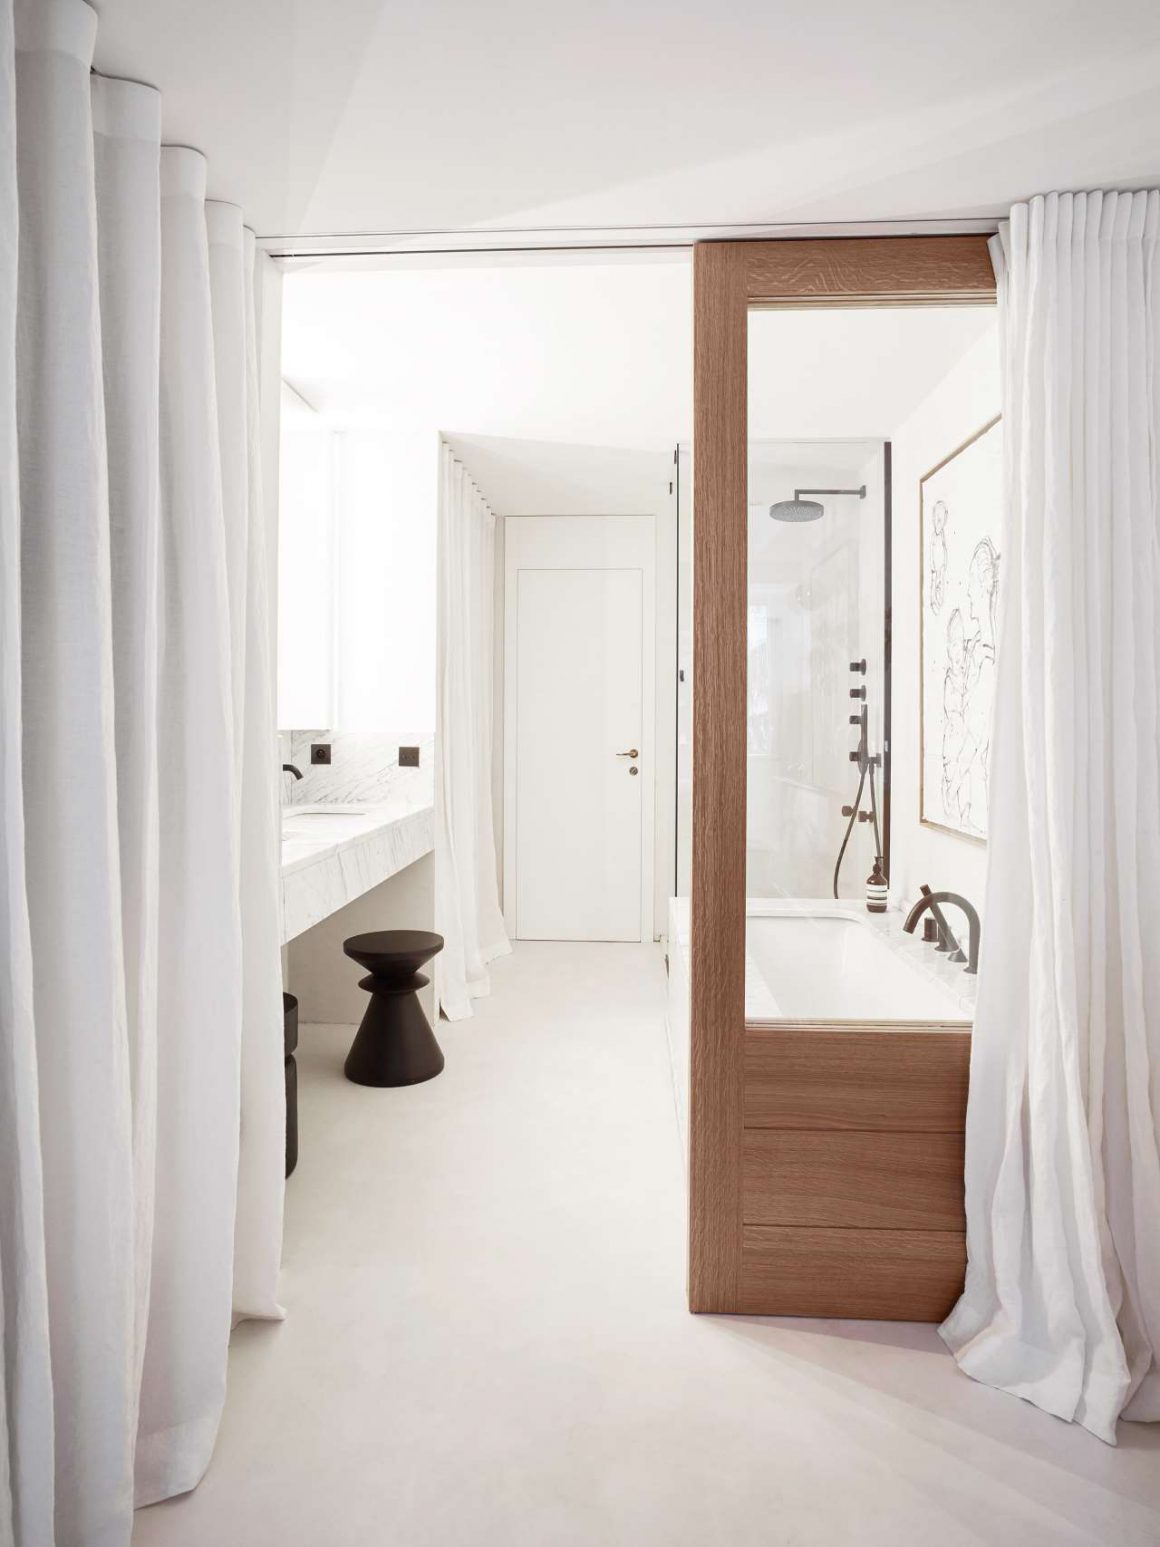 Salle de bain en longueur dans les tons de blanc et marron avec un évier un espace lavabo en marbre. Les vitres de la douche sont transparentes et bordurées par du bois rappelant la séparation de la chambre avec le reste de l'étage. 